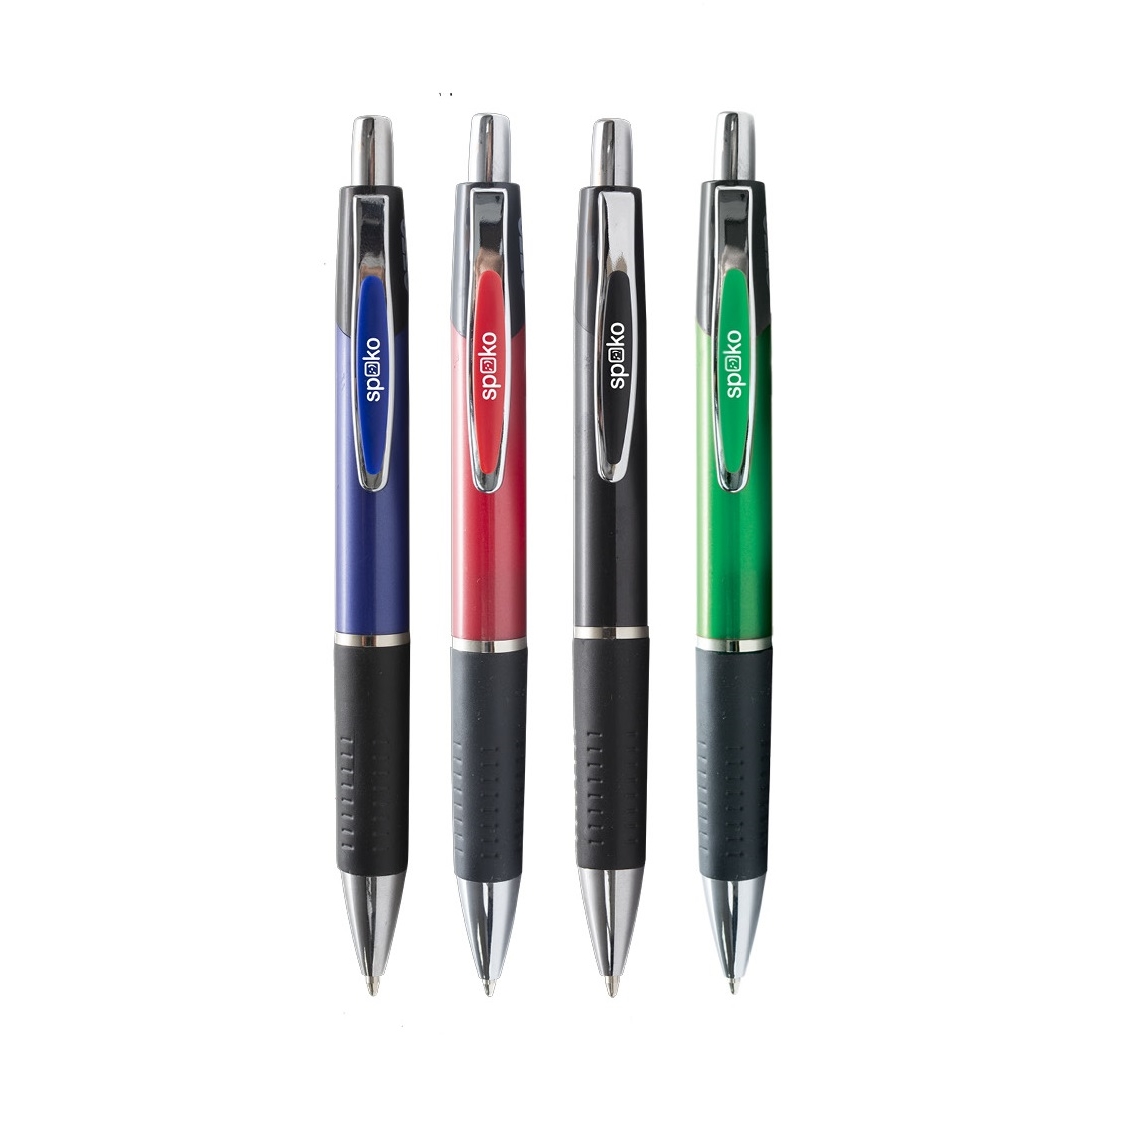 Kuličkové pero Spoko S011499, velkokapacitní modrá náplň, mix 4 barev